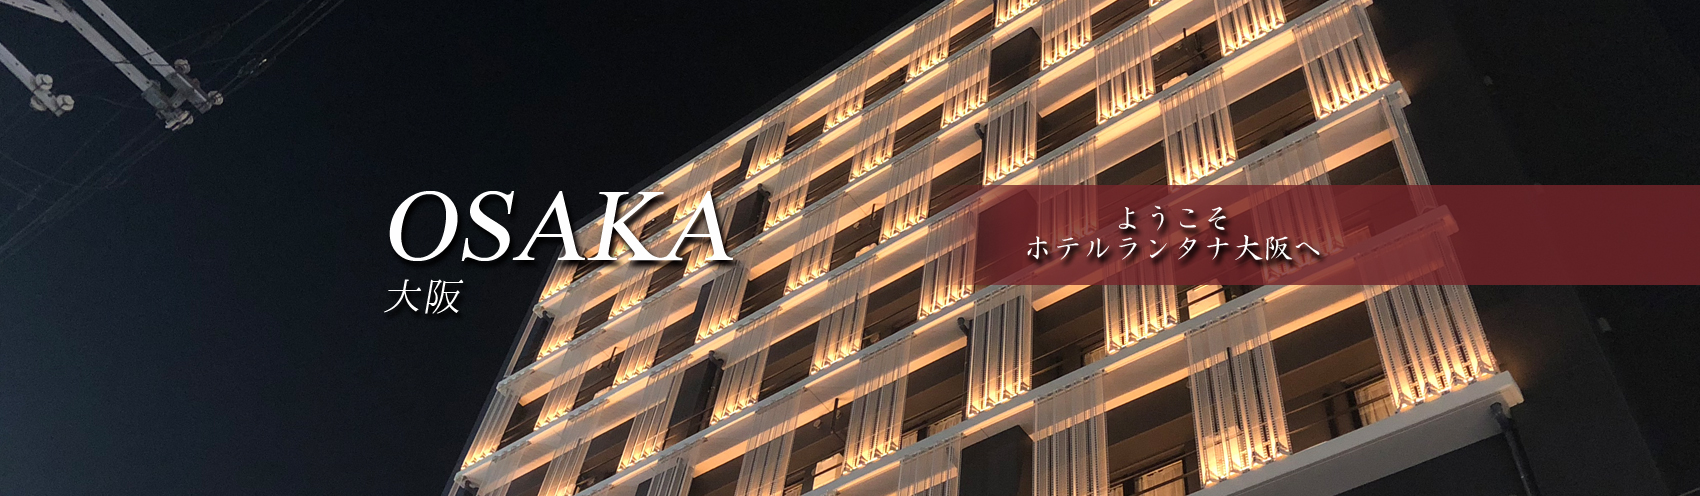 ようこそホテルランタナ大阪へ